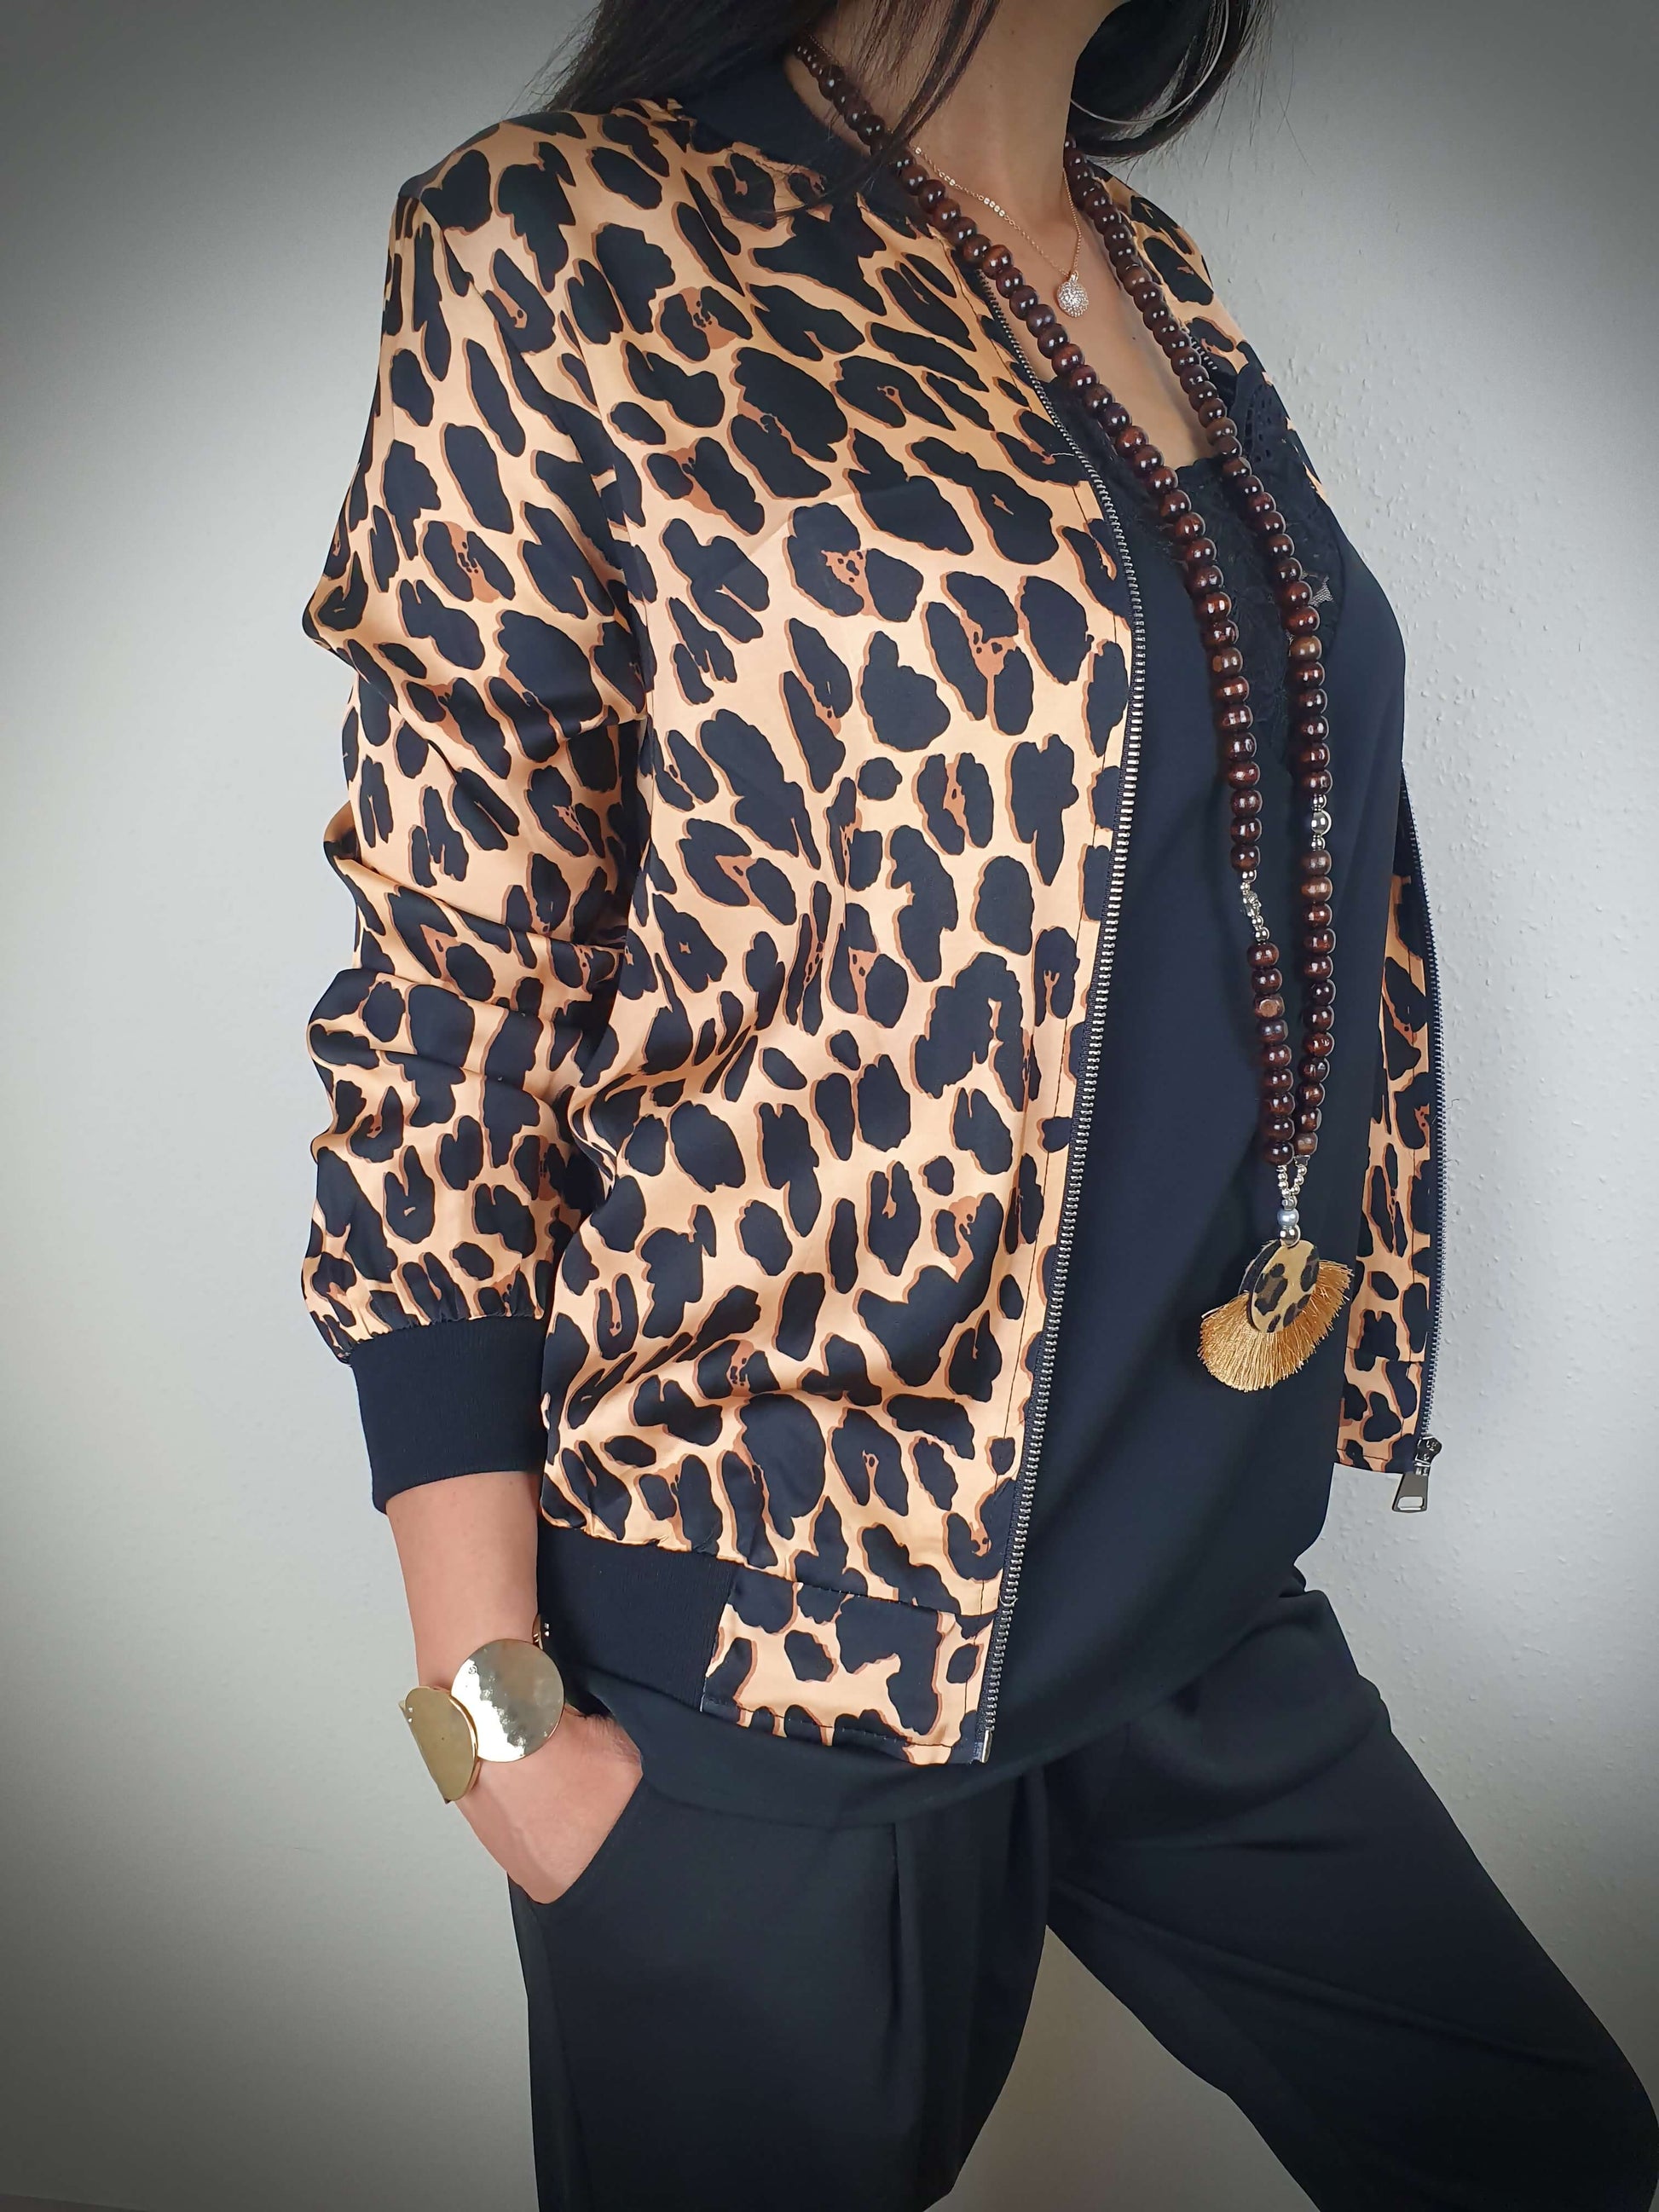 Tendance mode : les incontournables accessoires léopard